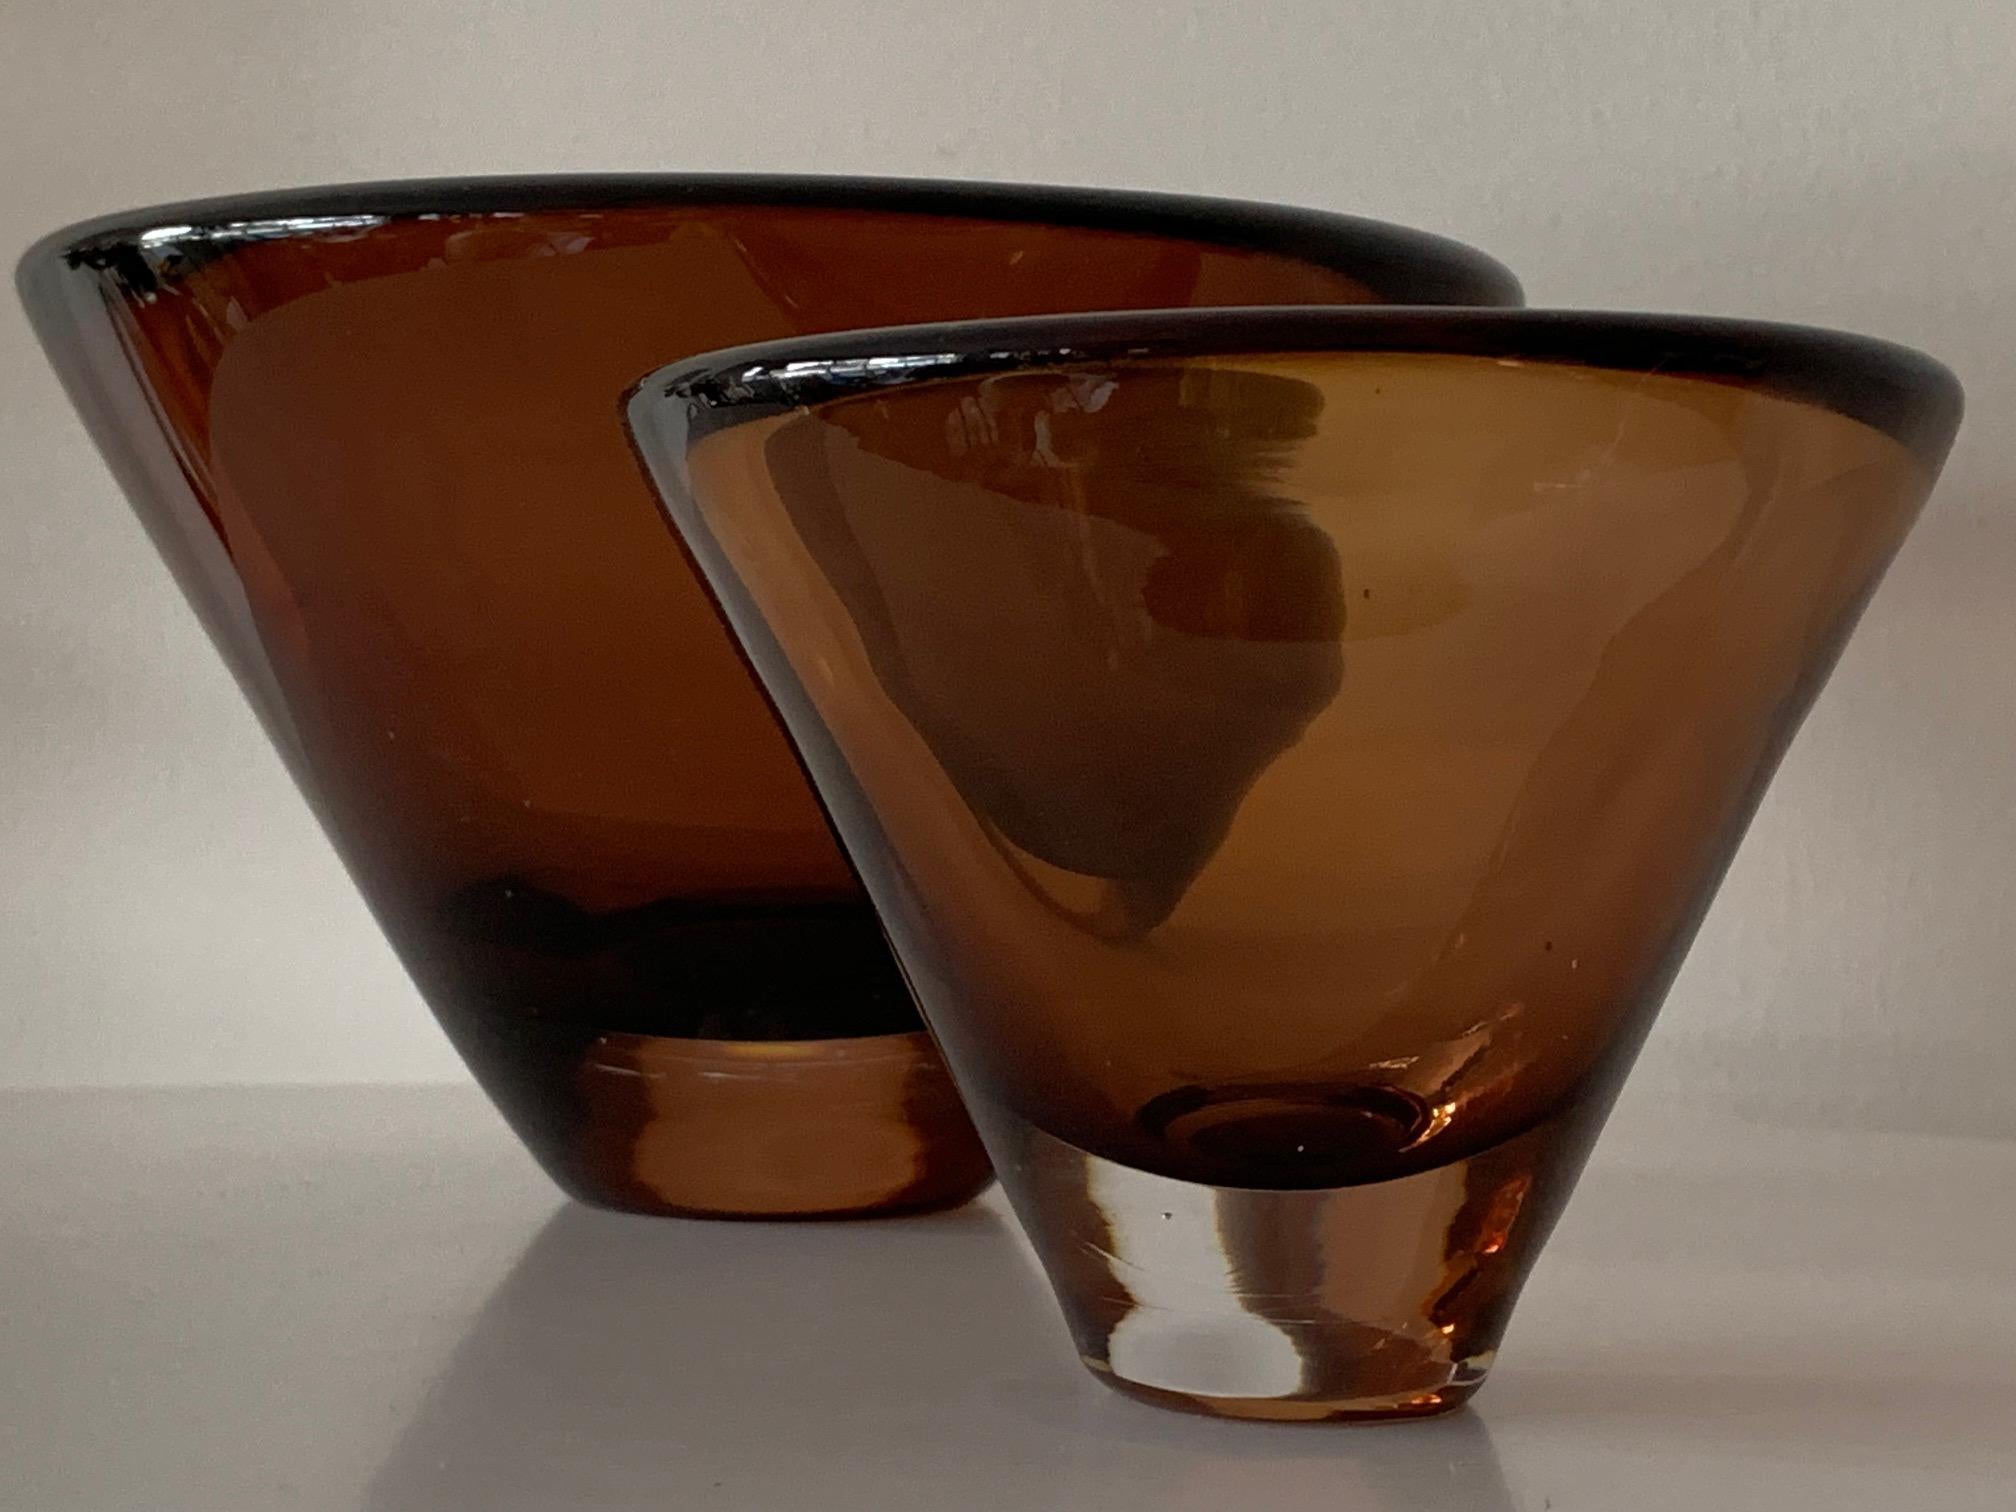 Vases en verre inhabituels de Vicke Lindstrand pour Kosta Boda, signés # 5599 et # 55997. Belle couleur brun foncé dans le style Sommerso, vers les années 1960.